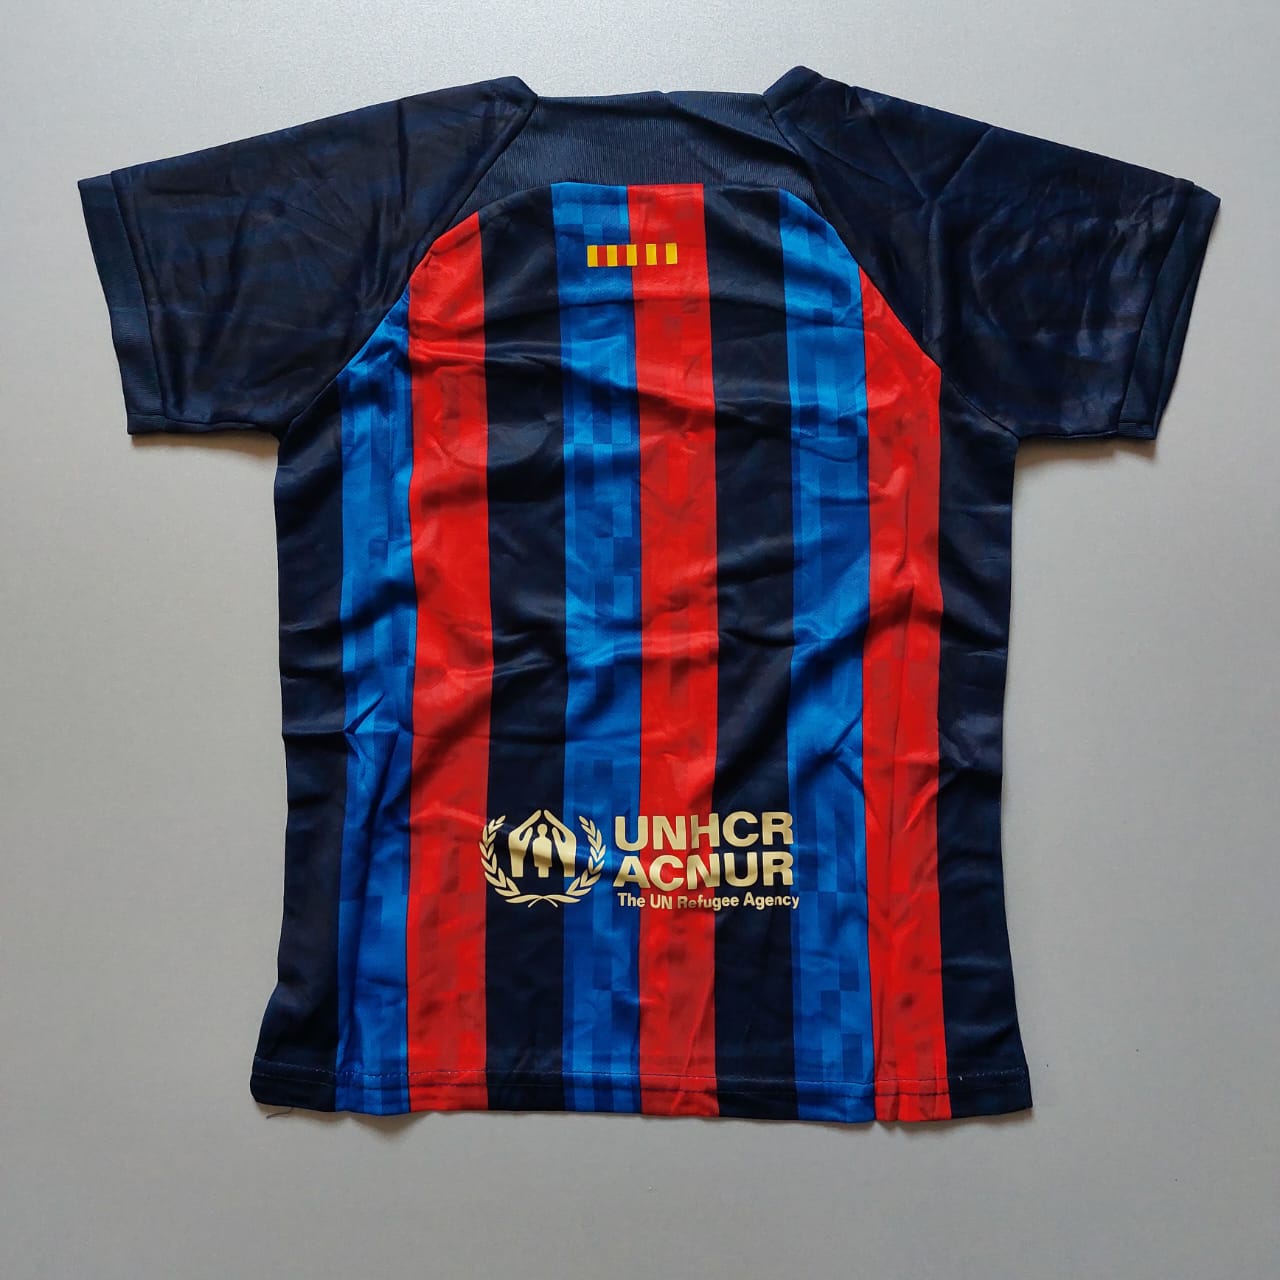 لباس اول بارسلونا - بچگانه (کیفیت A - فصل 22/23) به همراه شورت ورزشی